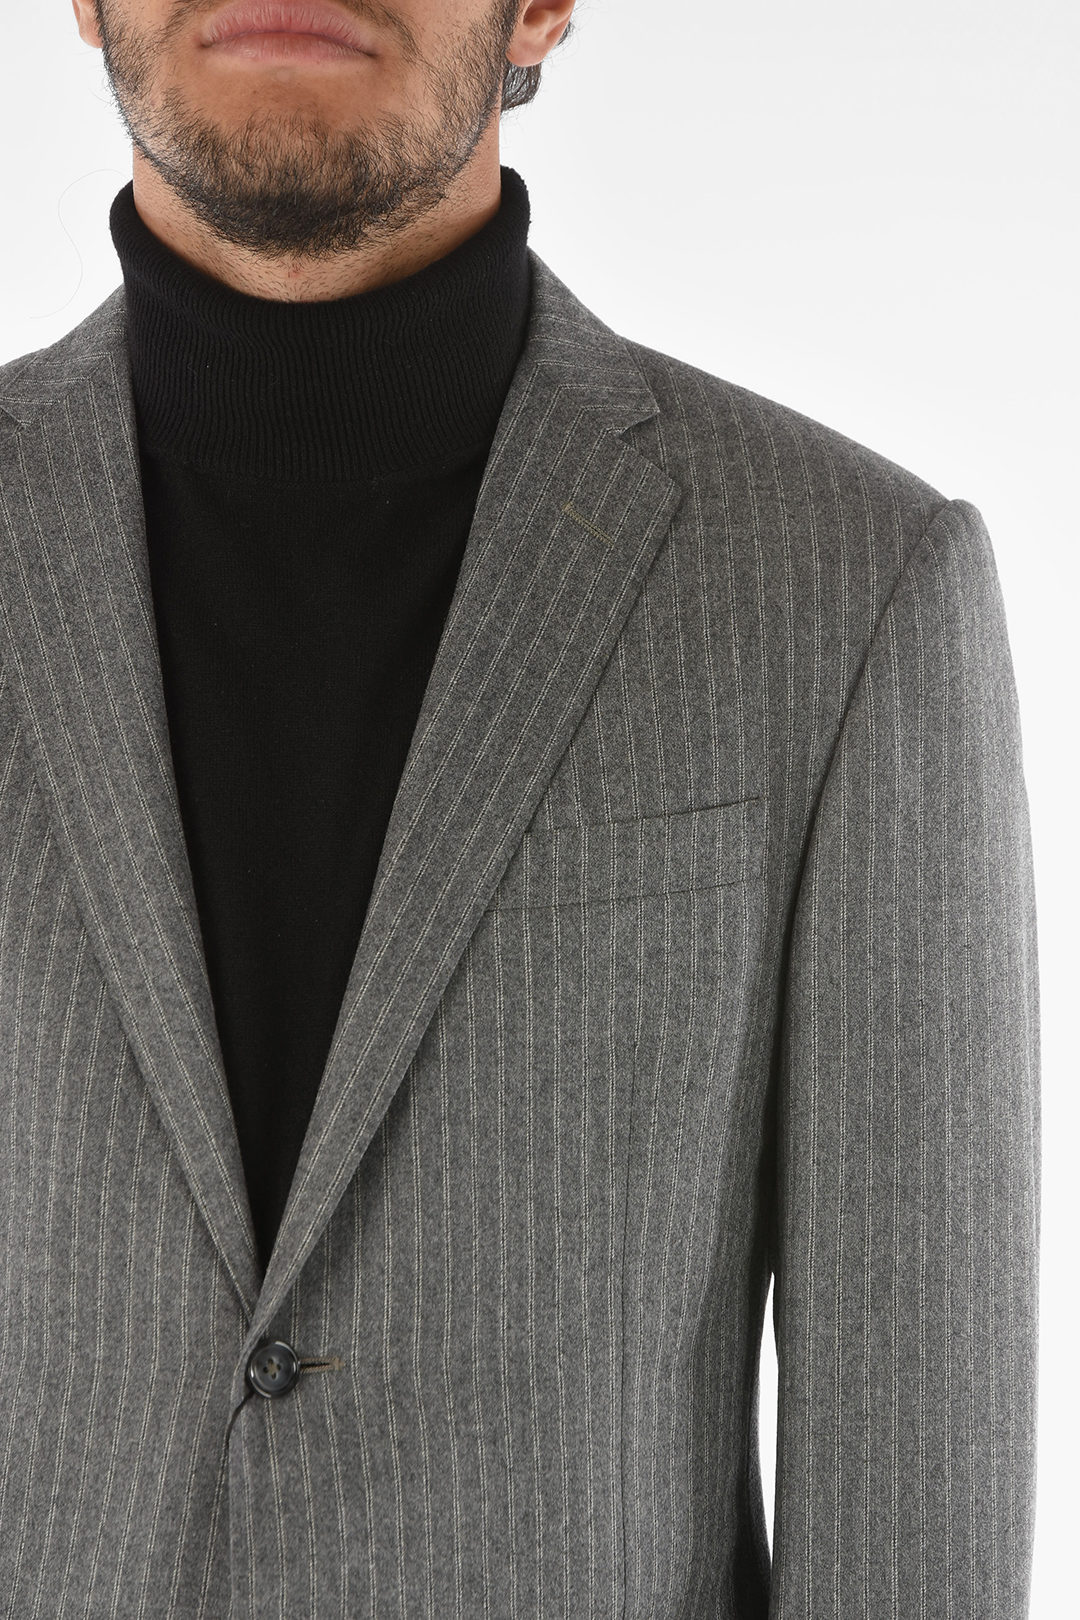 Corneliani Pinstriped Wool ACADEMY Suit with Notch Lapel men - Glamood ...